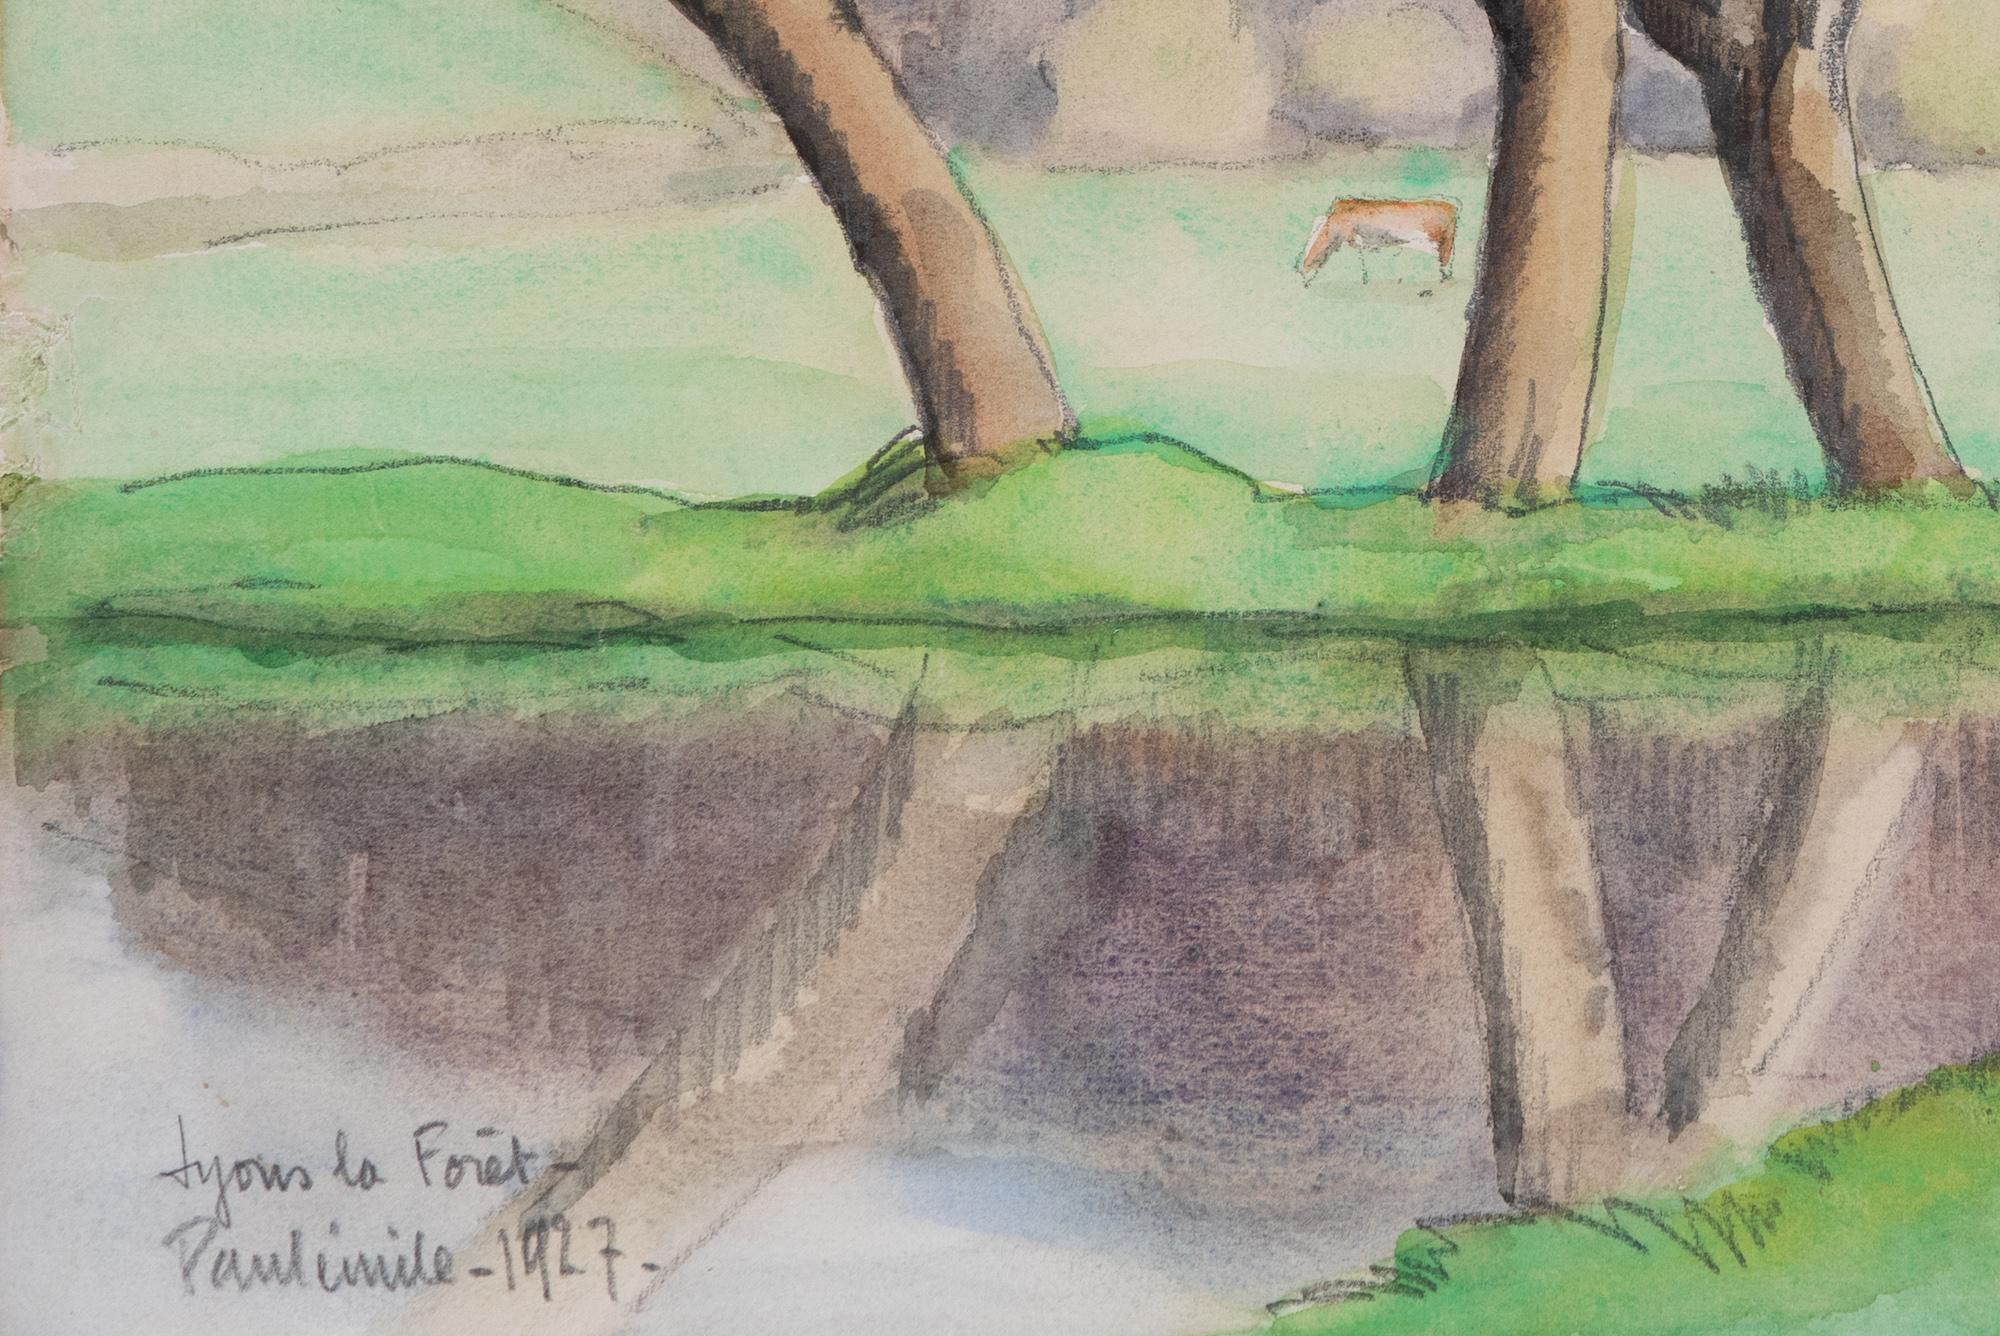 Rivière Eure, Lyon la Forêt par Paulémile Pissarro (1884-1972)
Aquarelle et crayon sur papier
31,5 x 48,5 cm (12 ³/₈ x 19 ¹/₈ inches)
Titré, signé et daté en bas à gauche, Lyons la Forêt - Paulémile - 1927 -.

Cette aquarelle représente la rivière